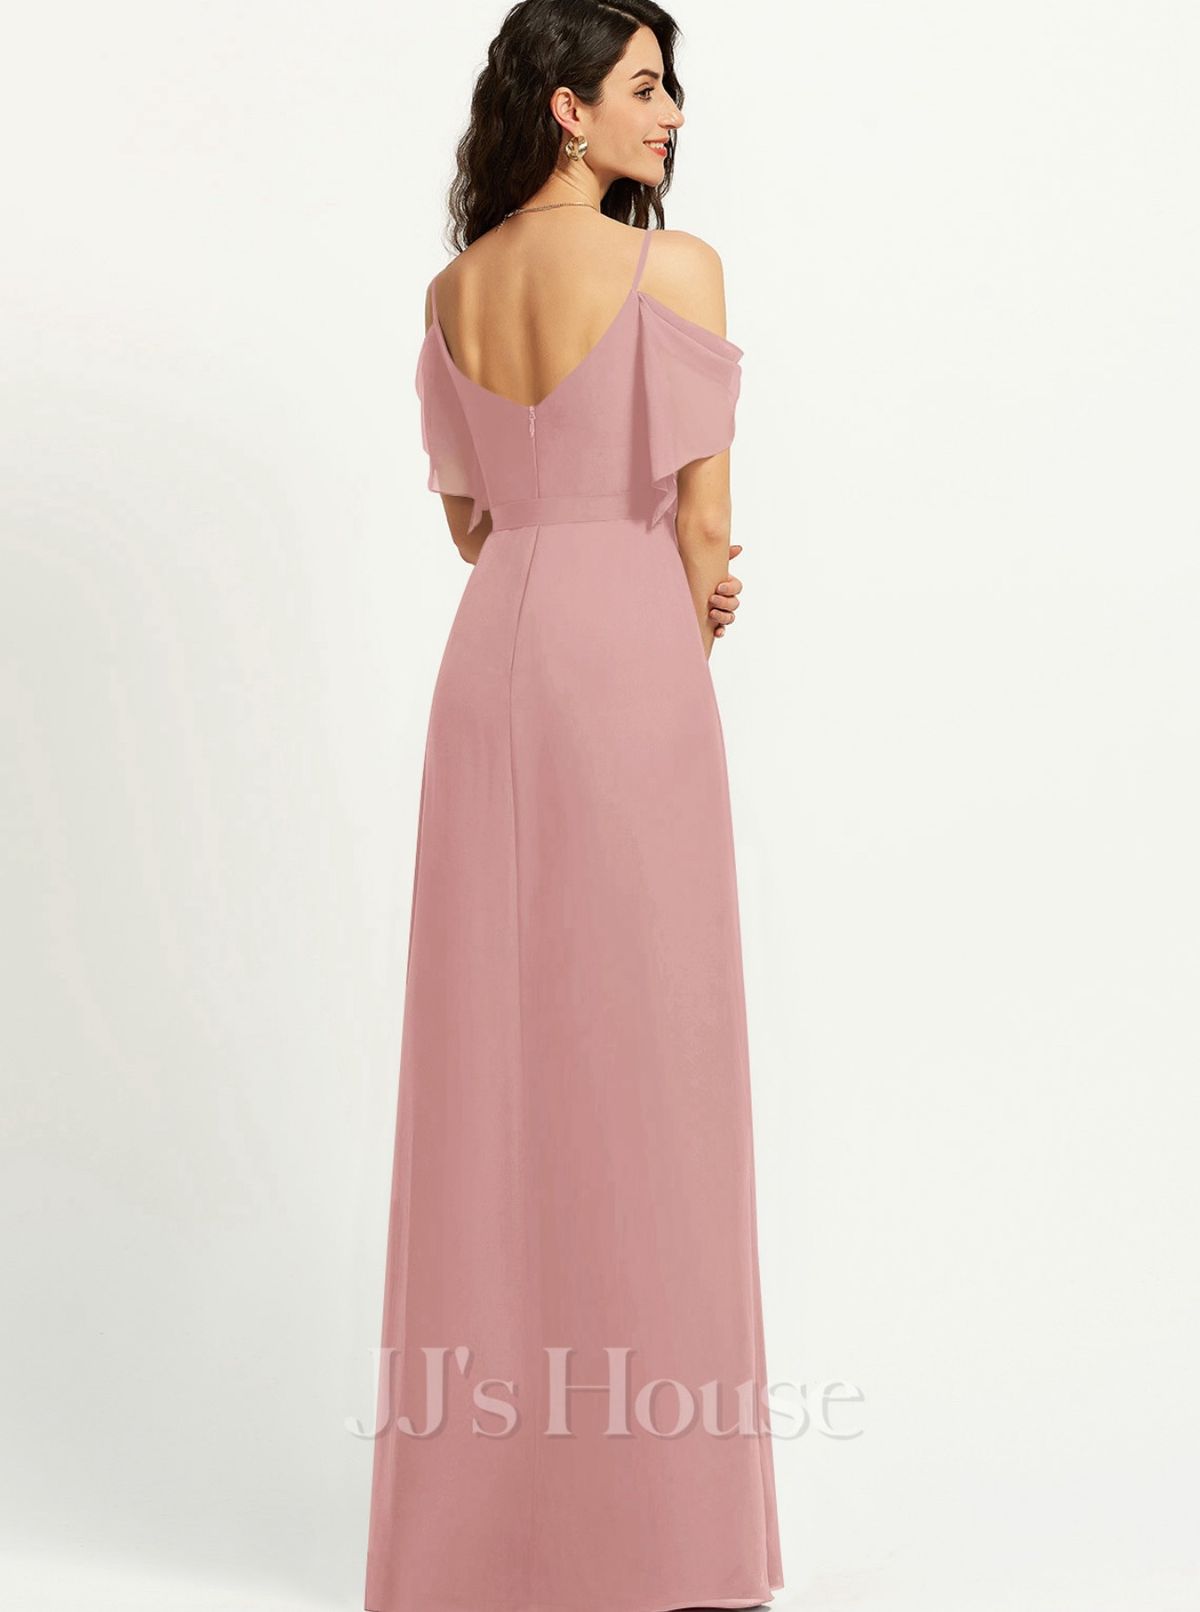 JJ House Size M Bridesmaid Off The Shoulder Pink Side Slit Dress on Queenly